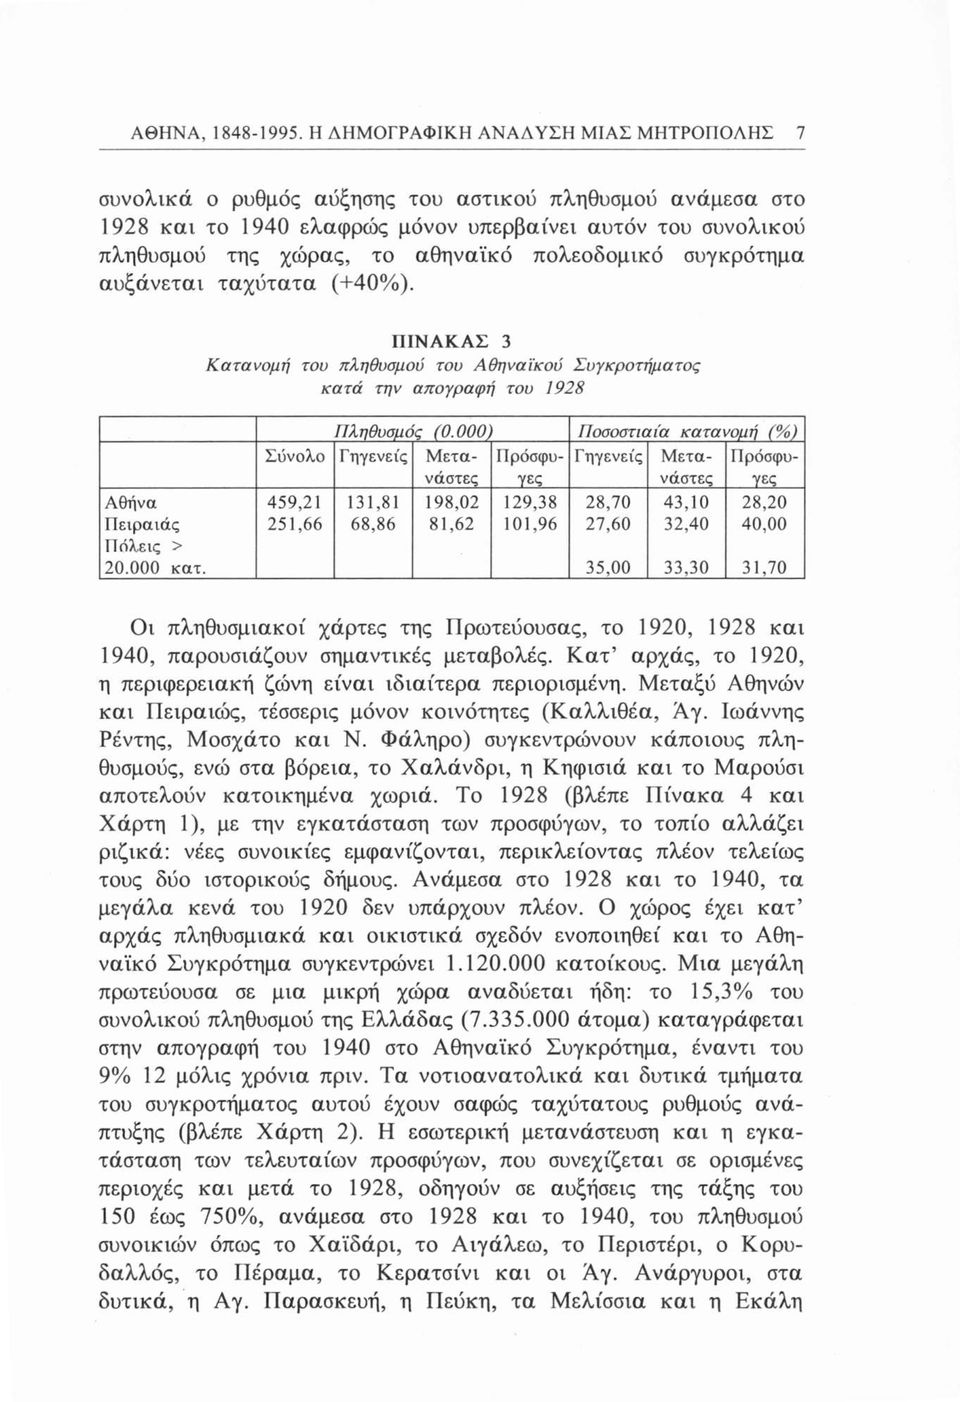 πολεοδομικό συγκρότημα αυξάνεται ταχύτατα (+40%). ΠΙΝΑΚΑΣ 3 Κατανομή του πληθυσμού του Αθηναϊκού Συγκροτήματος κατά την απογραφή του 1928 Αθήνα Πειραιάς Πόλεις > 20.000 κατ. Πληθυσμός (0.